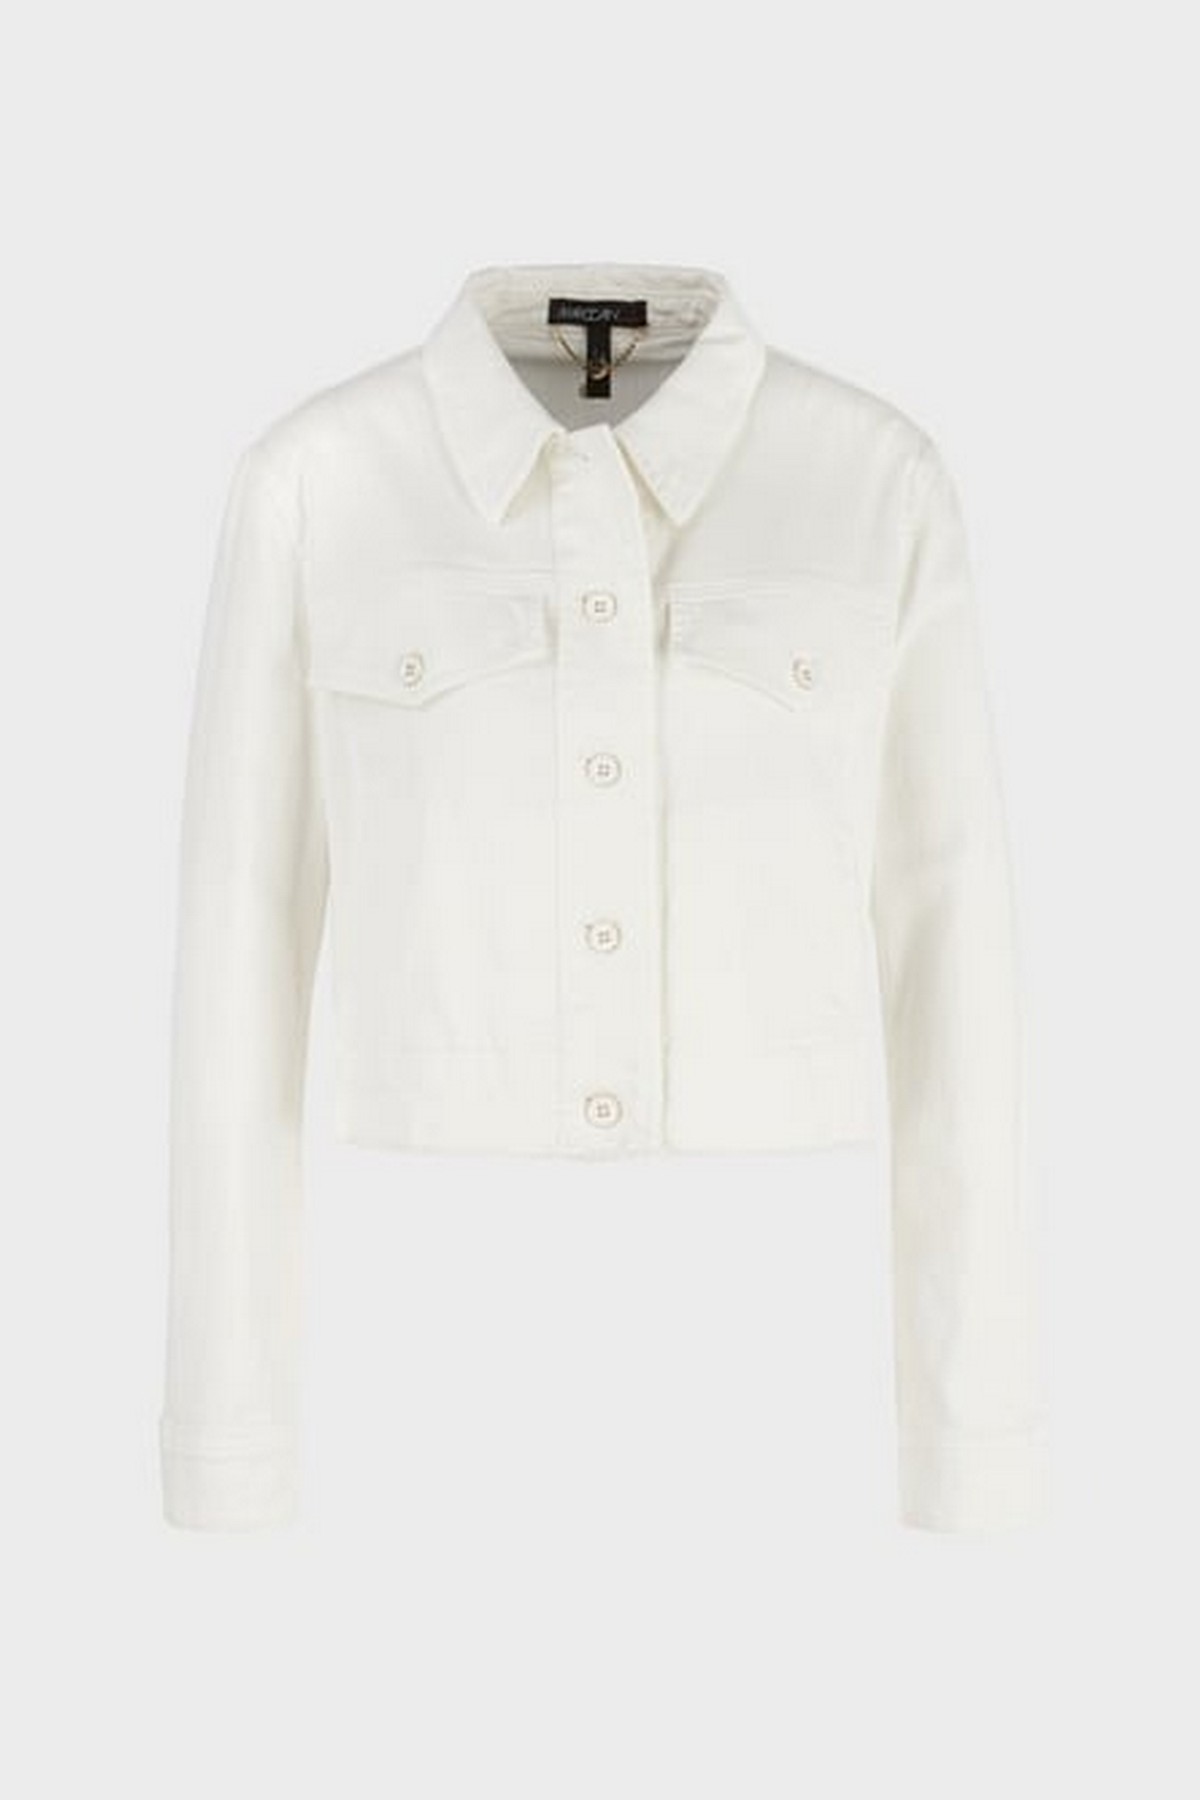 Jeansvest kort raffles in de kleur off white van het merk Marc Cain Collections